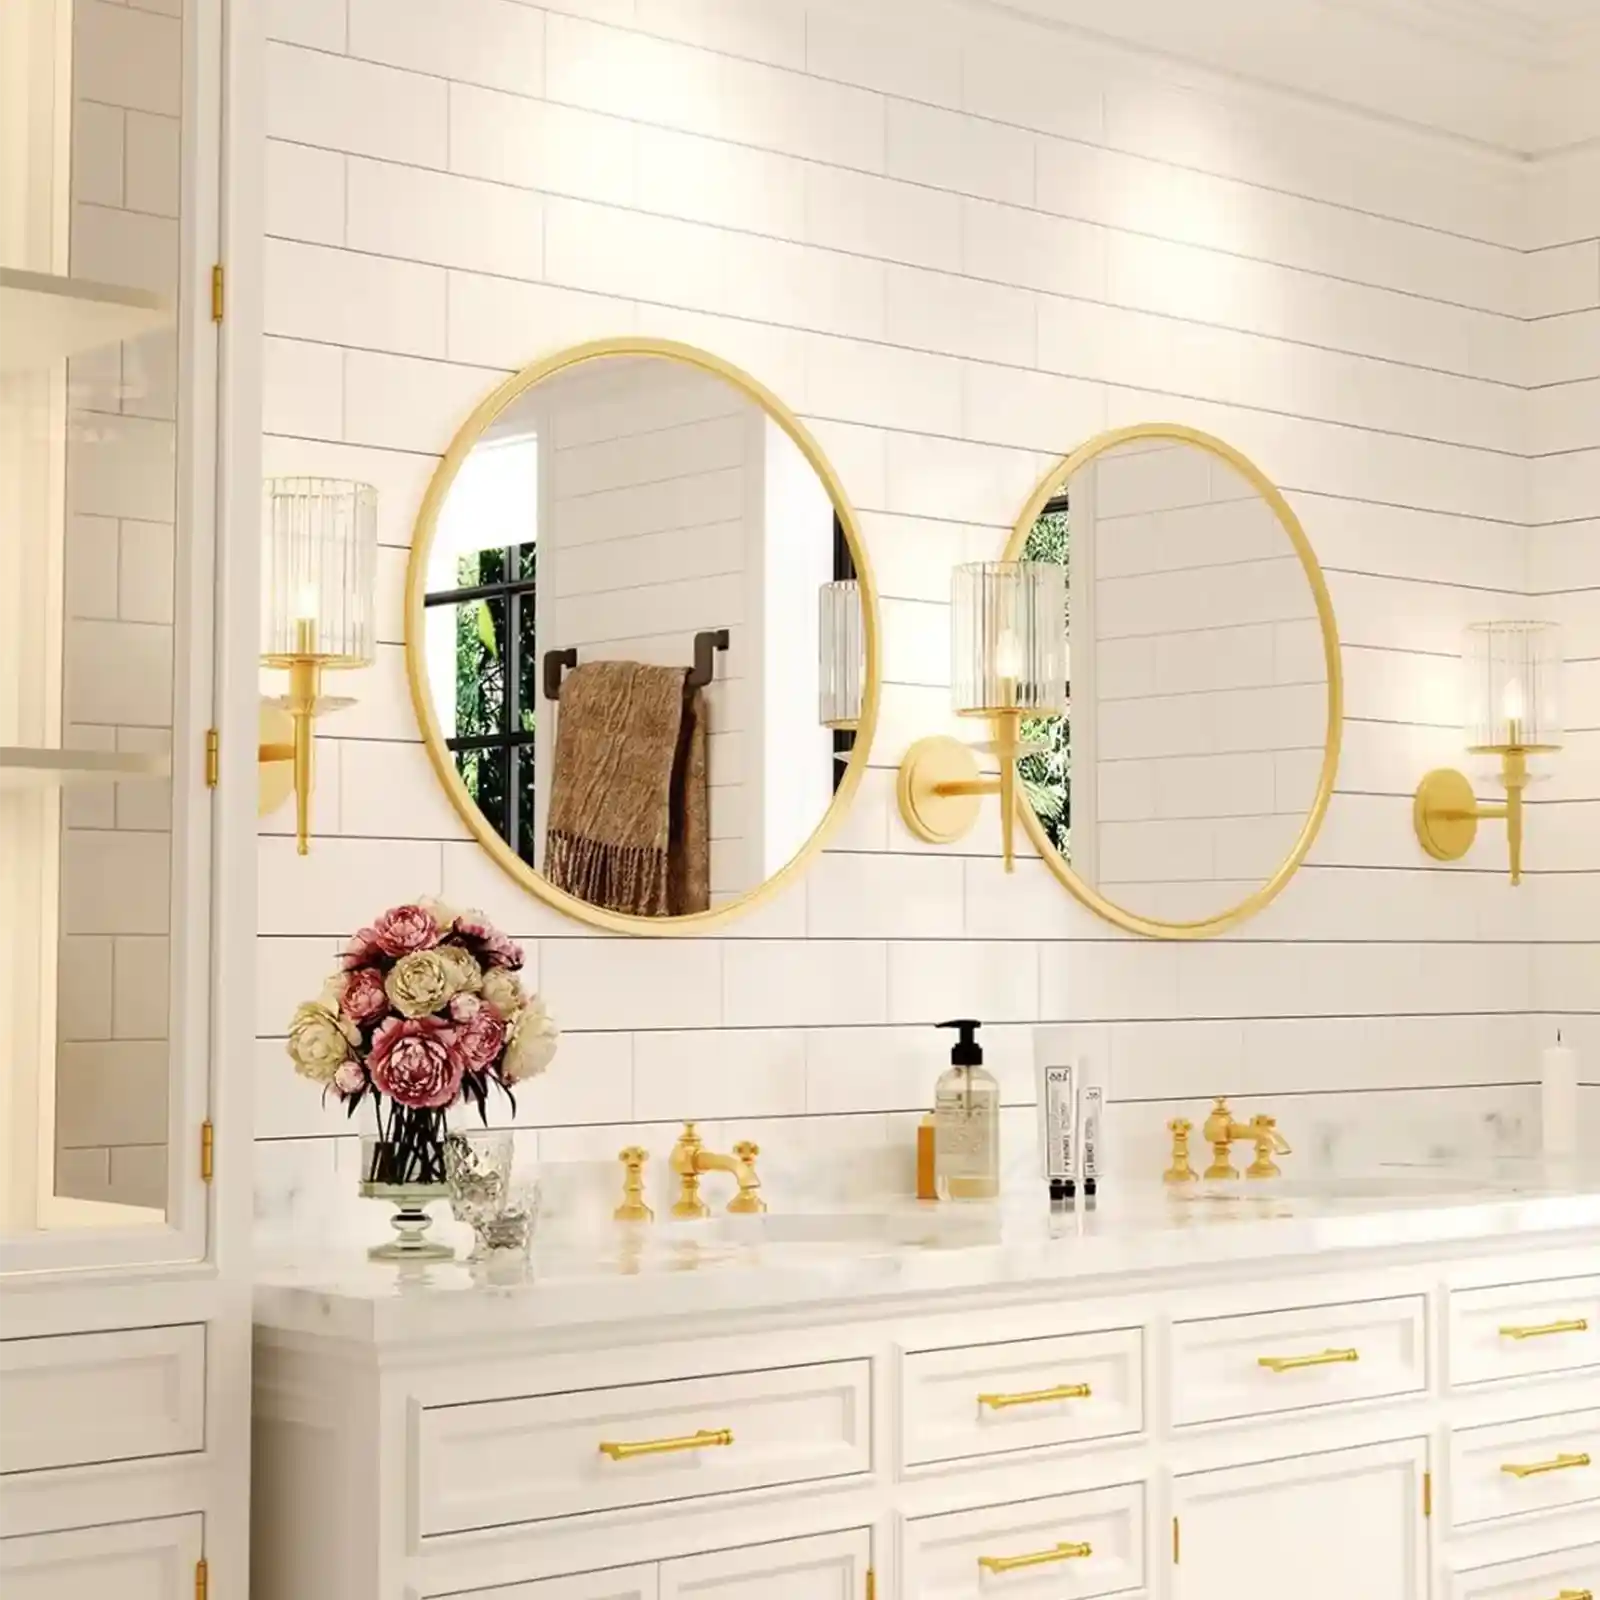 Espejo redondo dorado, espejo de pared circular para tocador de baño, sala de estar de entrada con marco de metal para decoración del hogar 